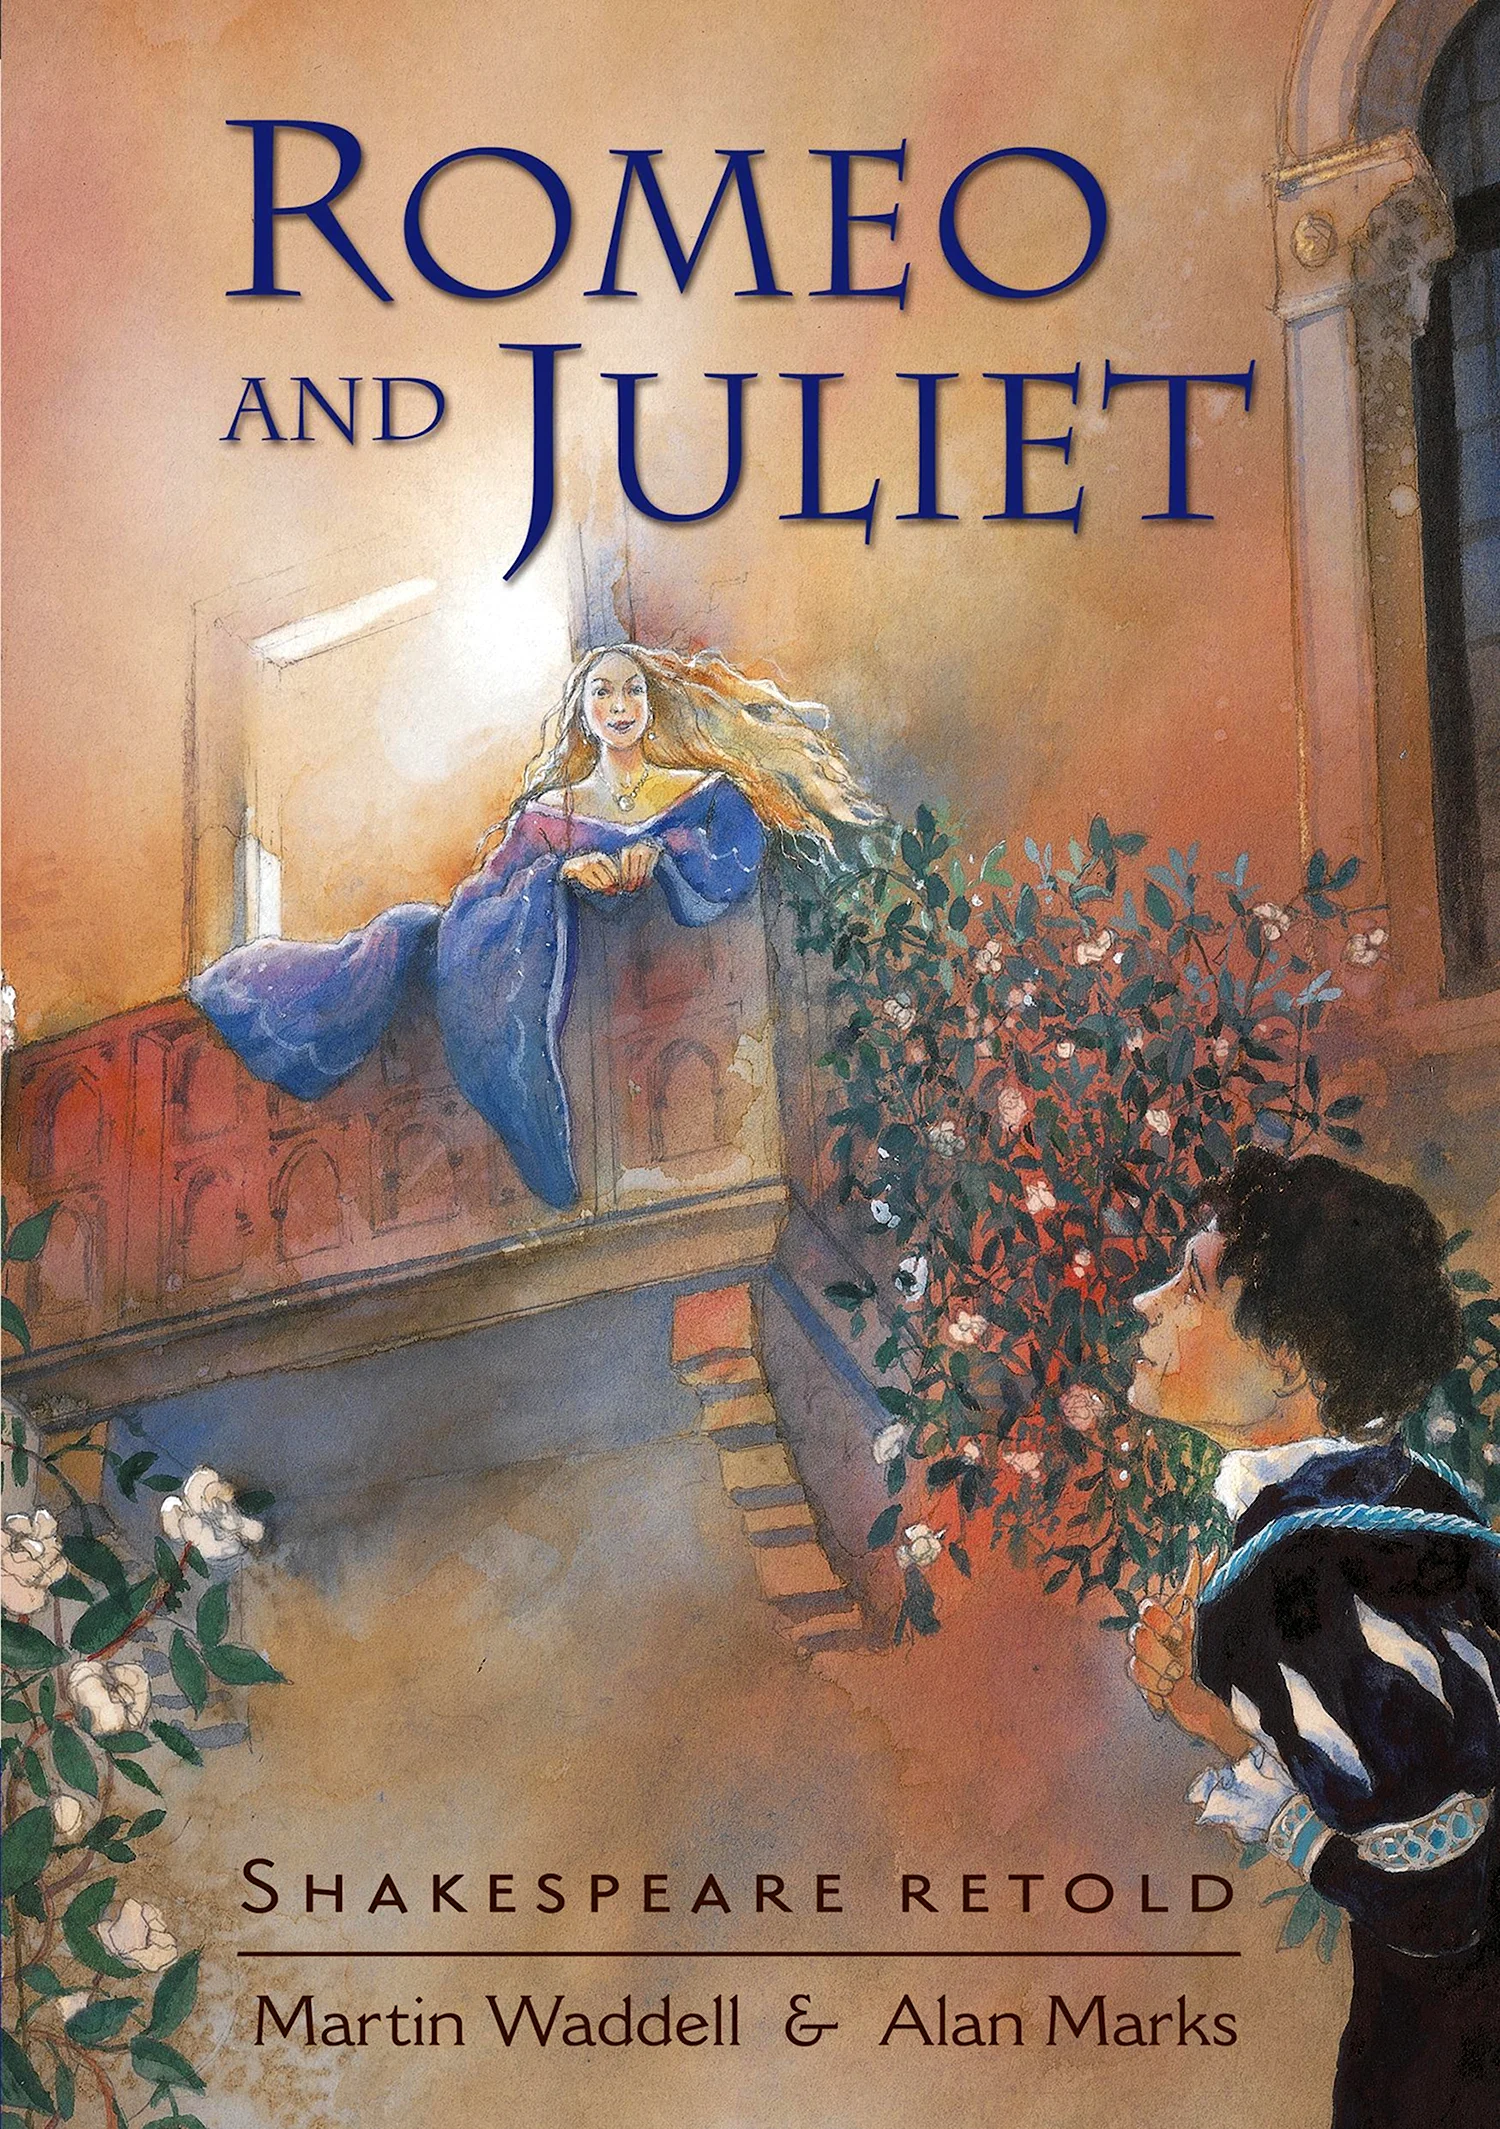 Ромео и Джульетта Шекспир обложка на английском